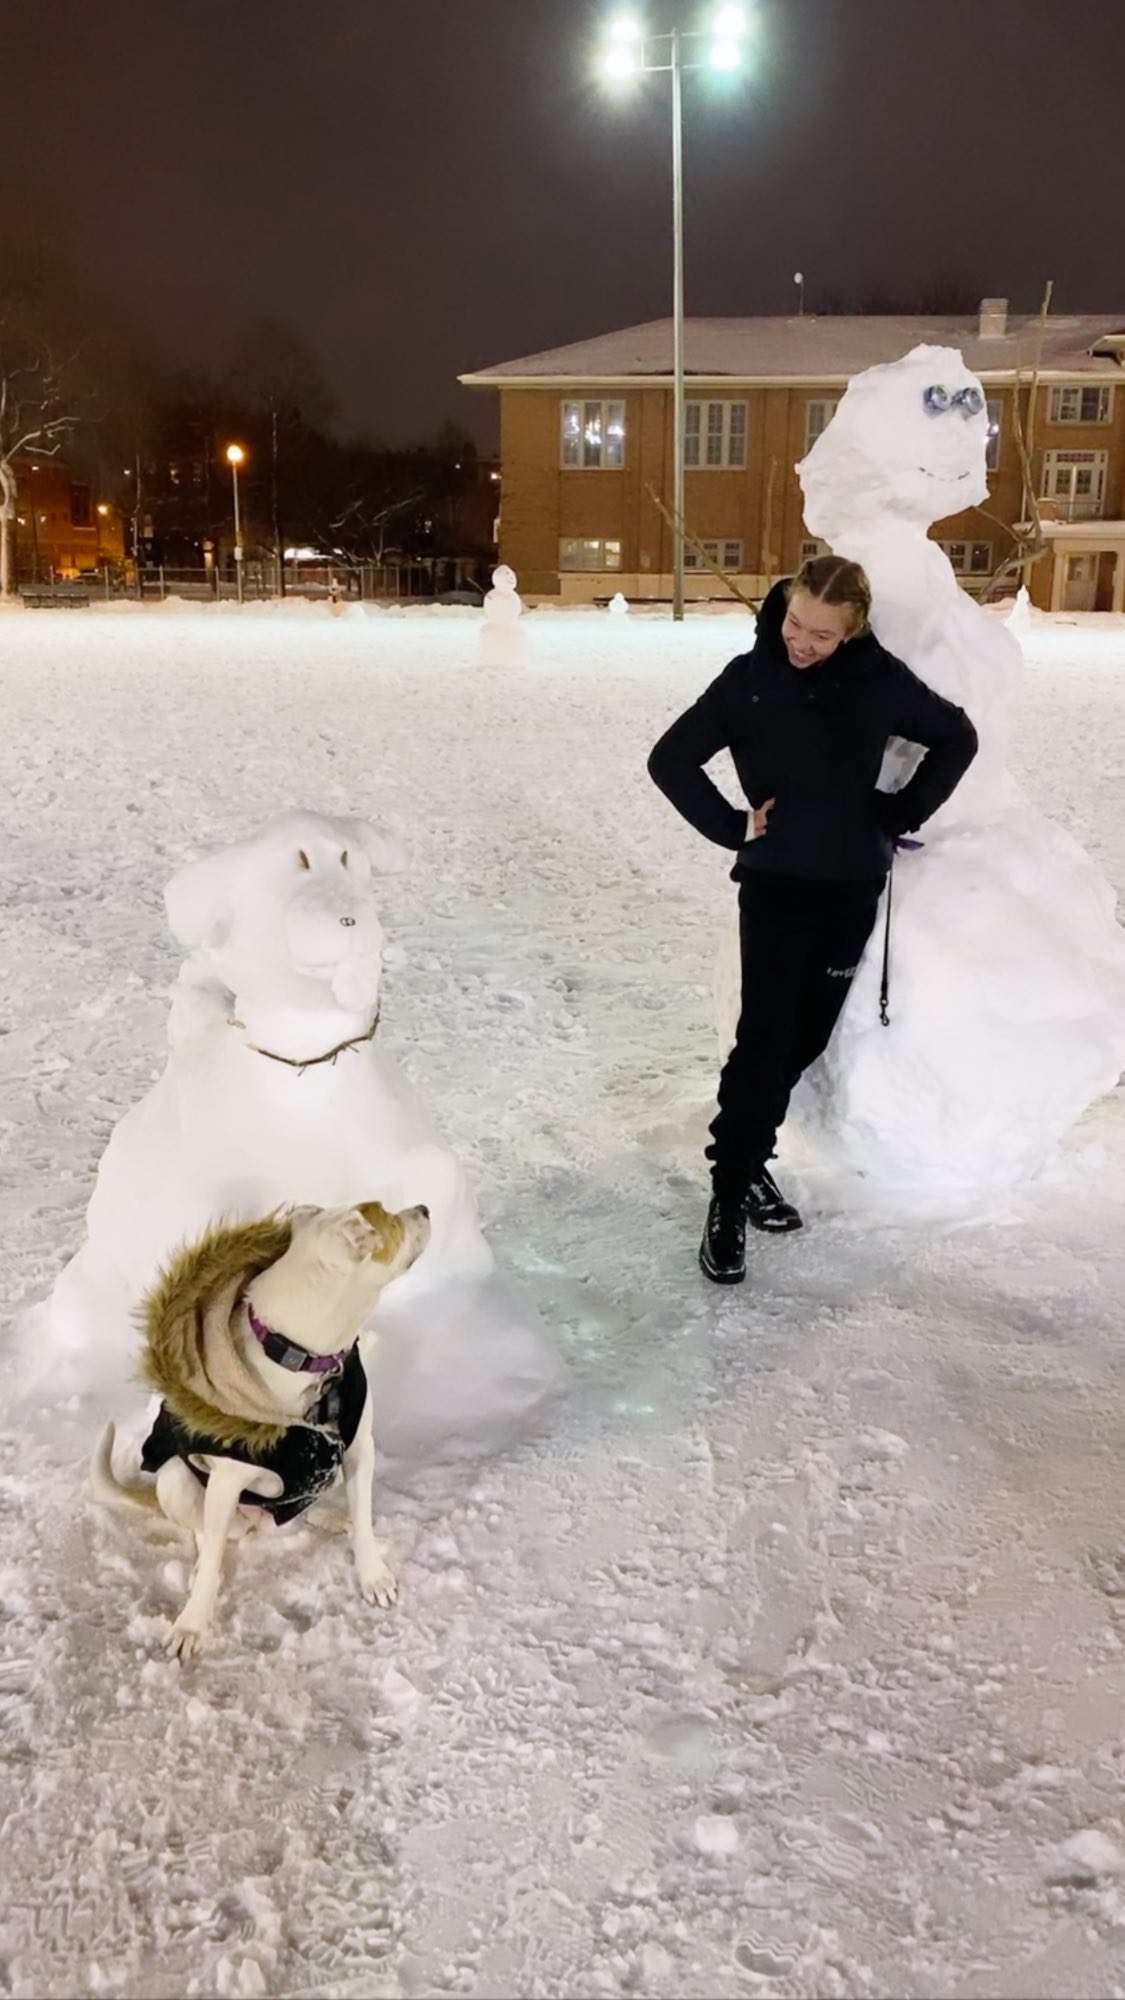 PHOTOS Sydney Sweeney construit une arme de bonhommes de neige! - Photo 6